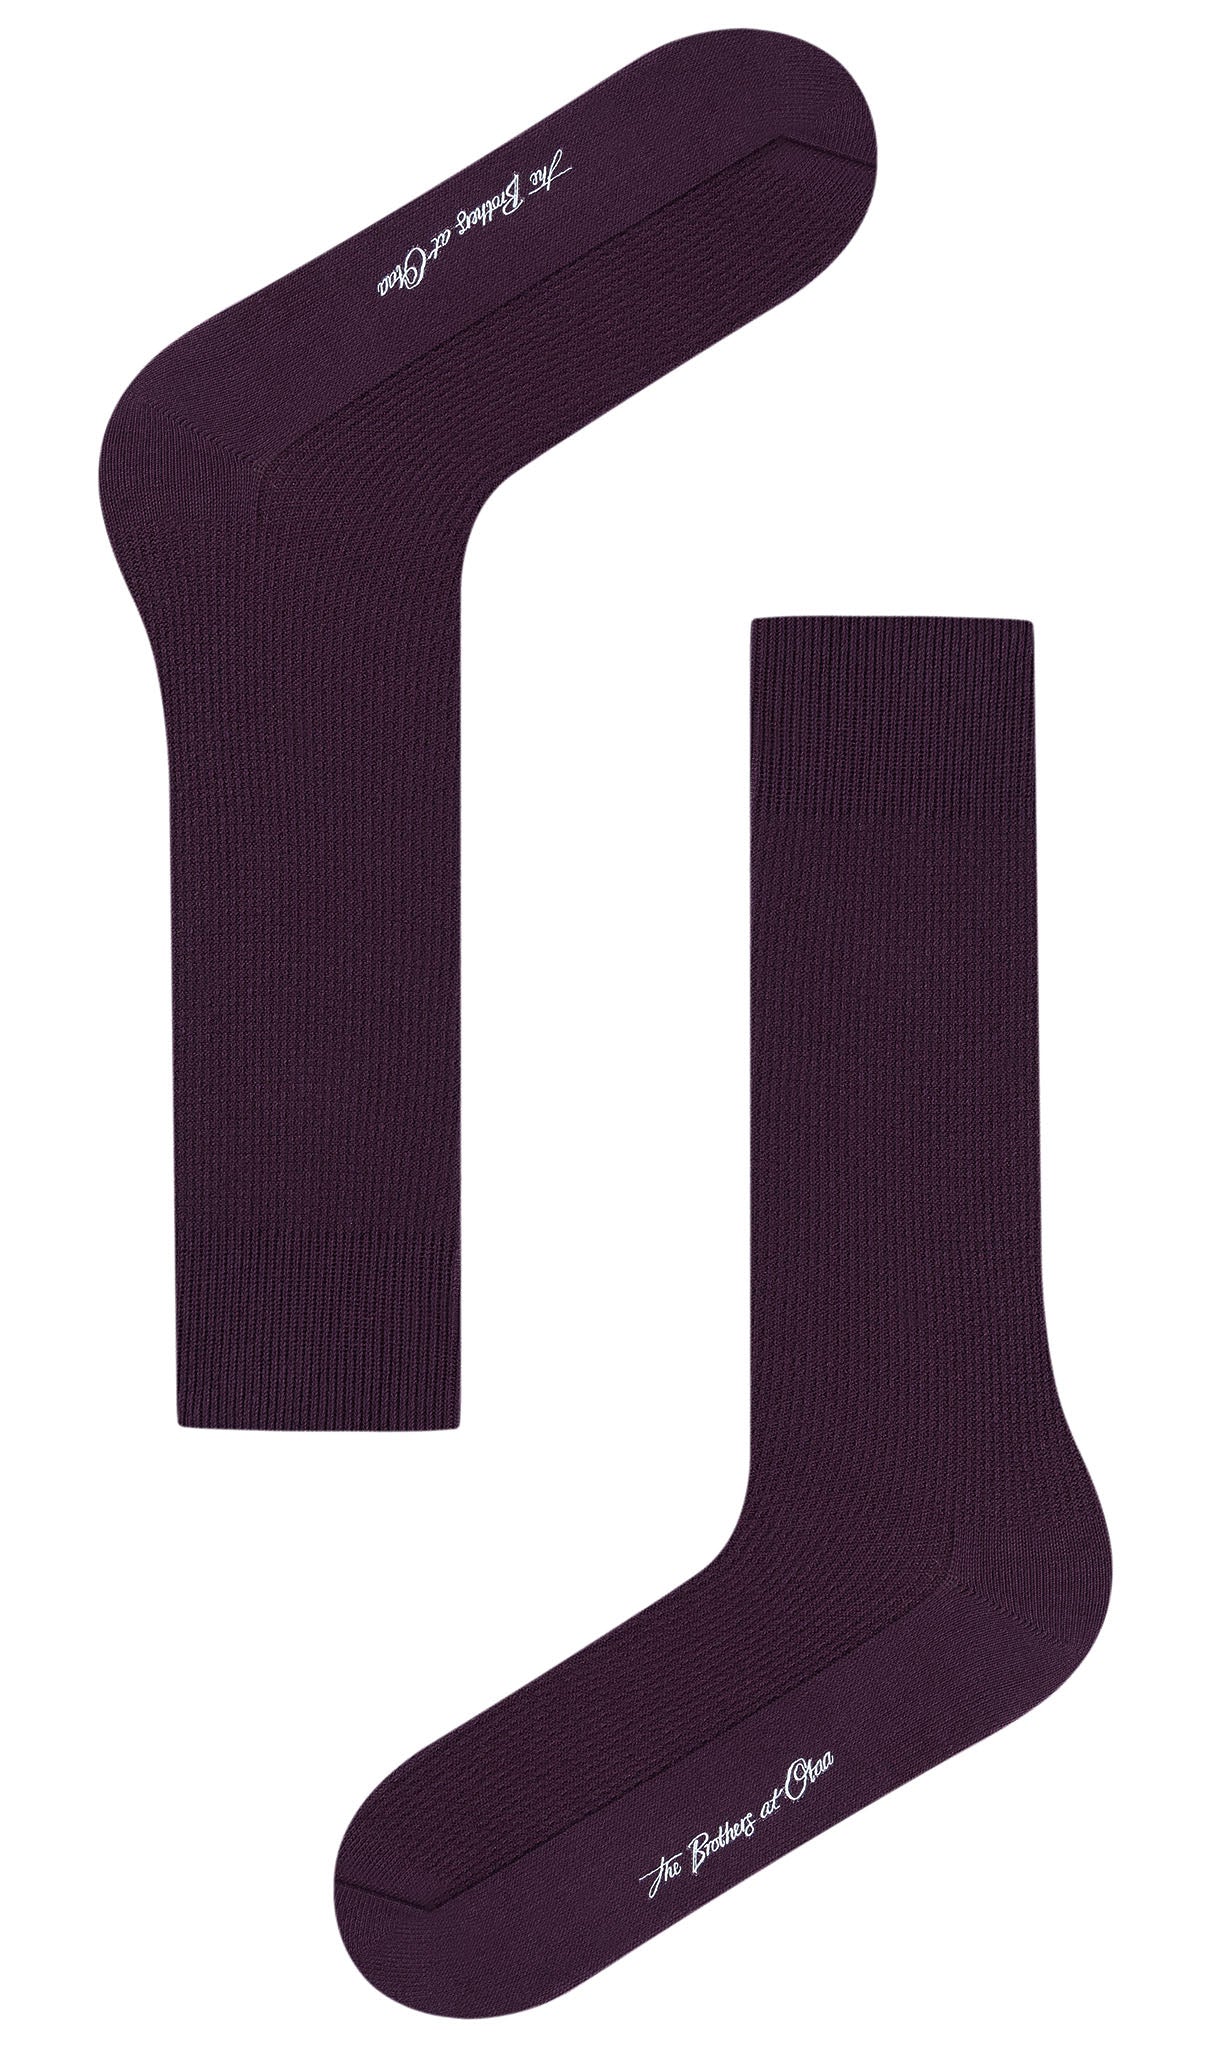 Plum Purple Textured Socks